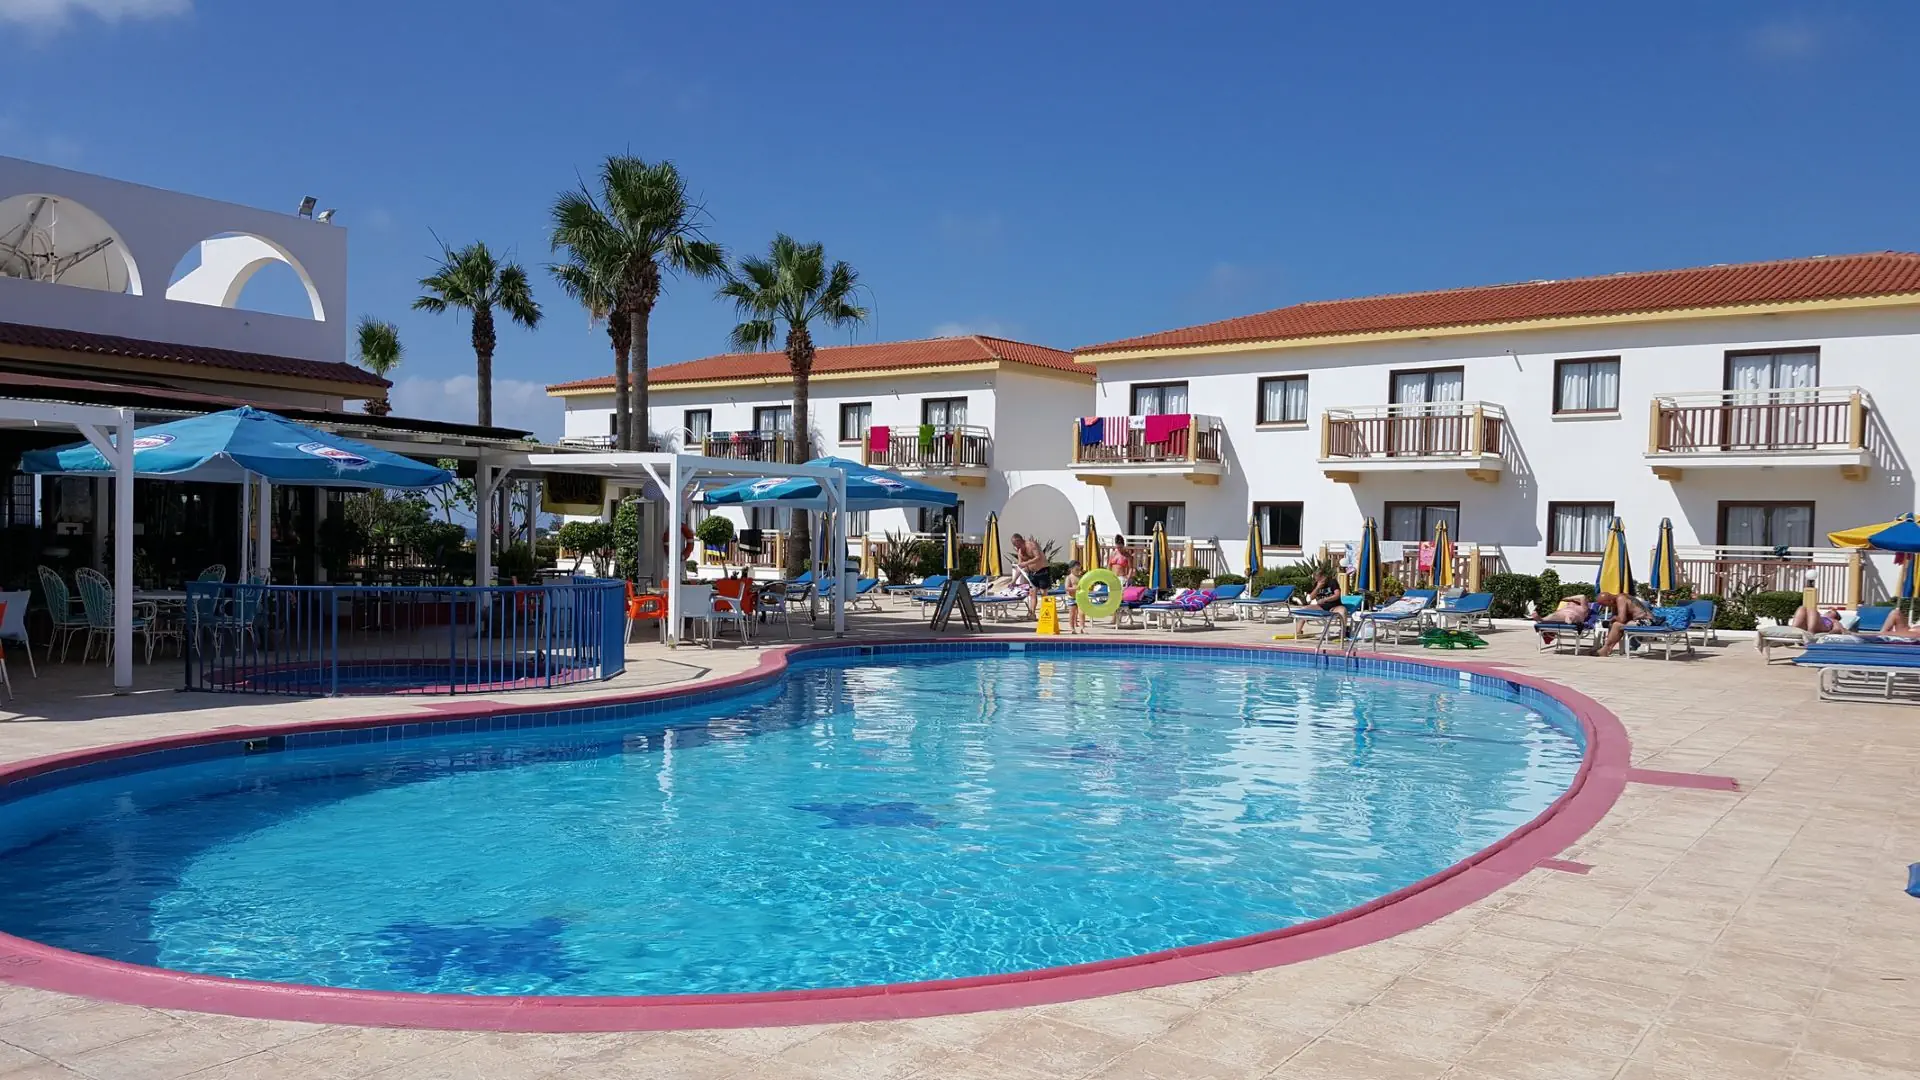 Cypr Ayia Napa Ajia Napa Cosmelenia Hotel Apartments